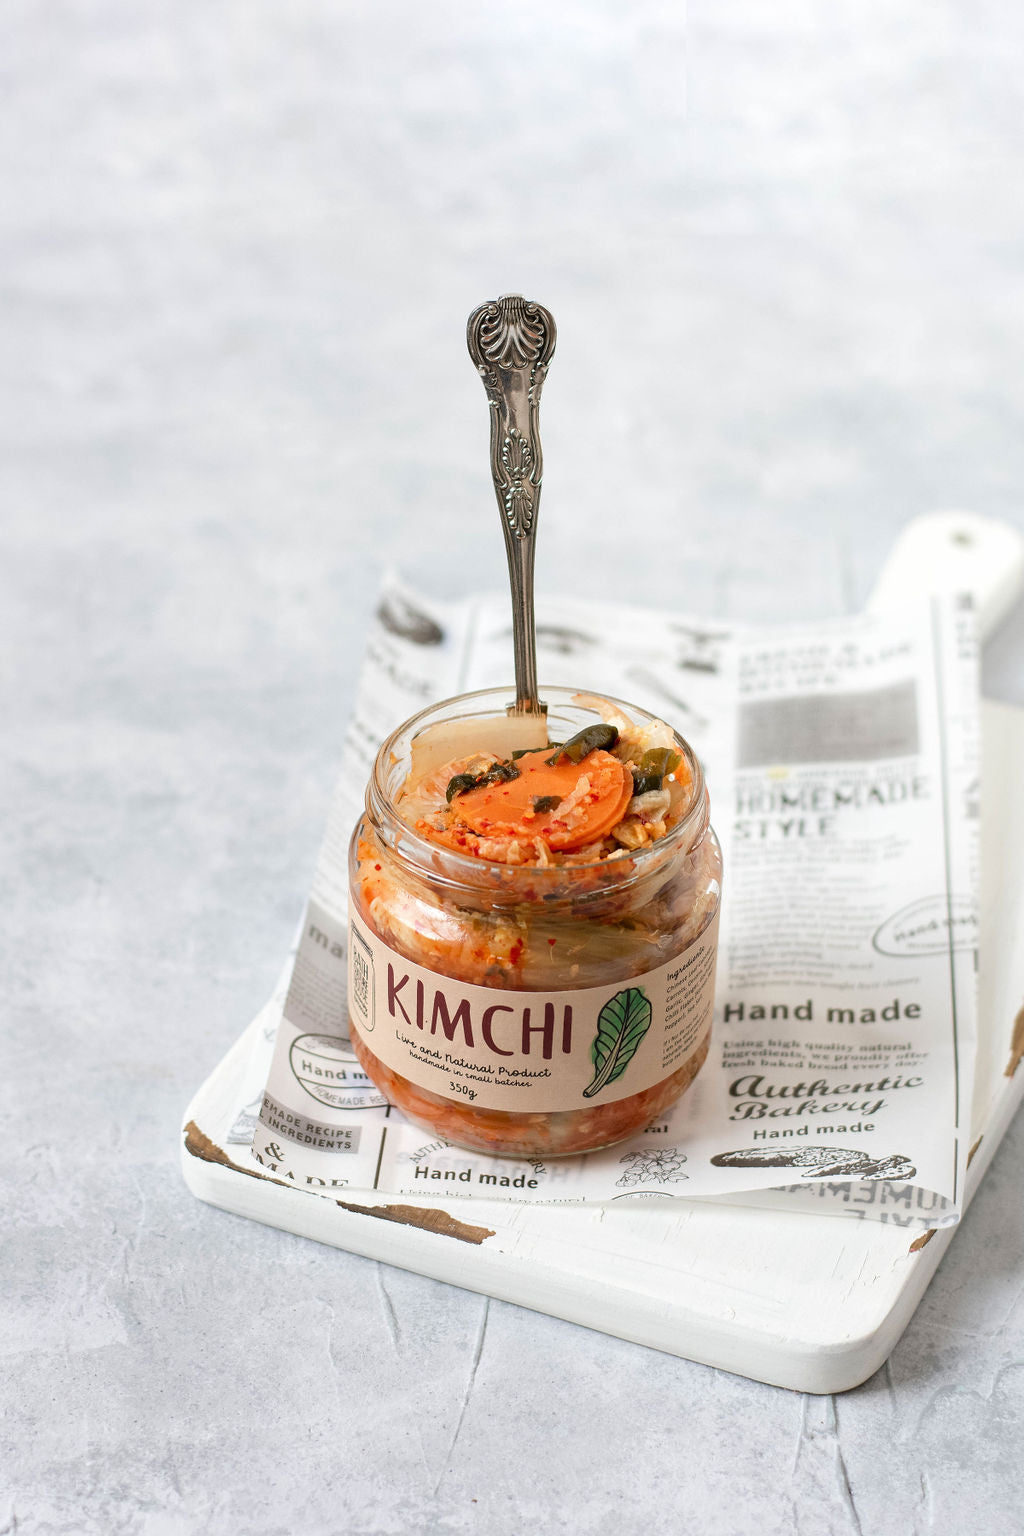 Great Taste Awarded Kimchi & Kraut Gift Box (3 x 350g)